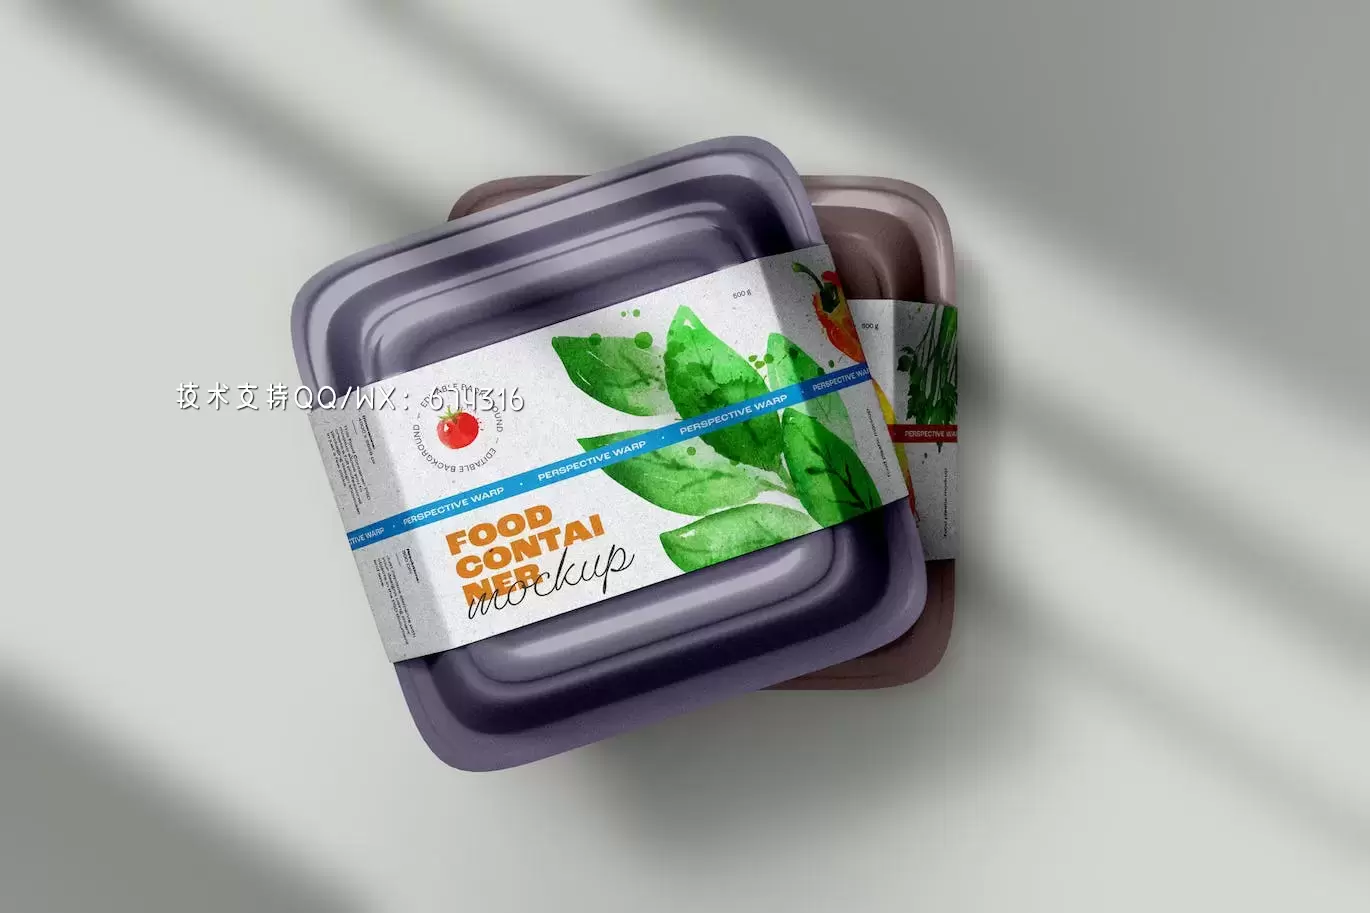 塑料食品容器包装样机 (PSD)免费下载